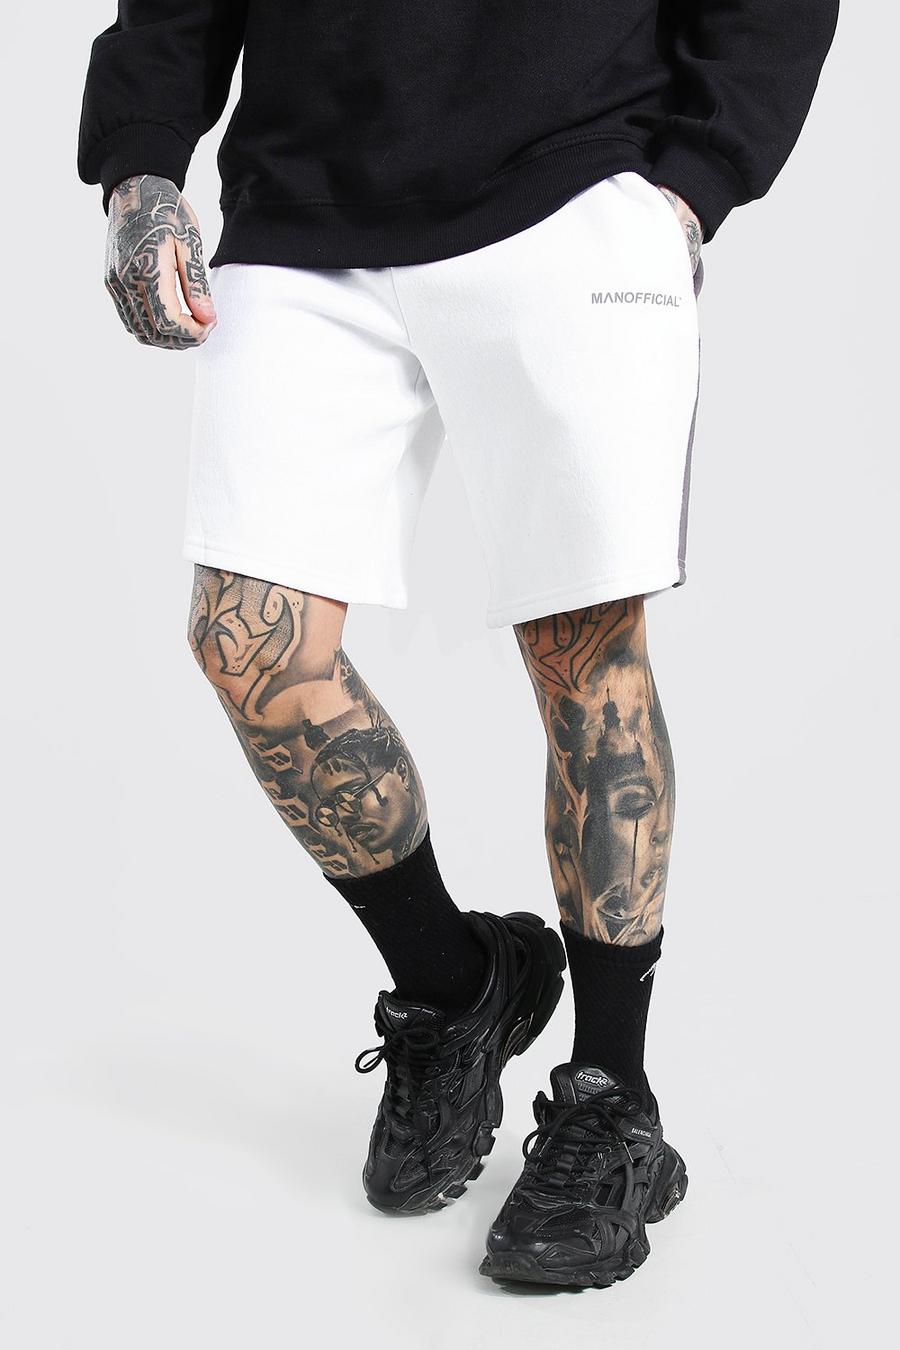 Pantaloncini taglio rilassato con pannello laterale Man Official, Bianco image number 1